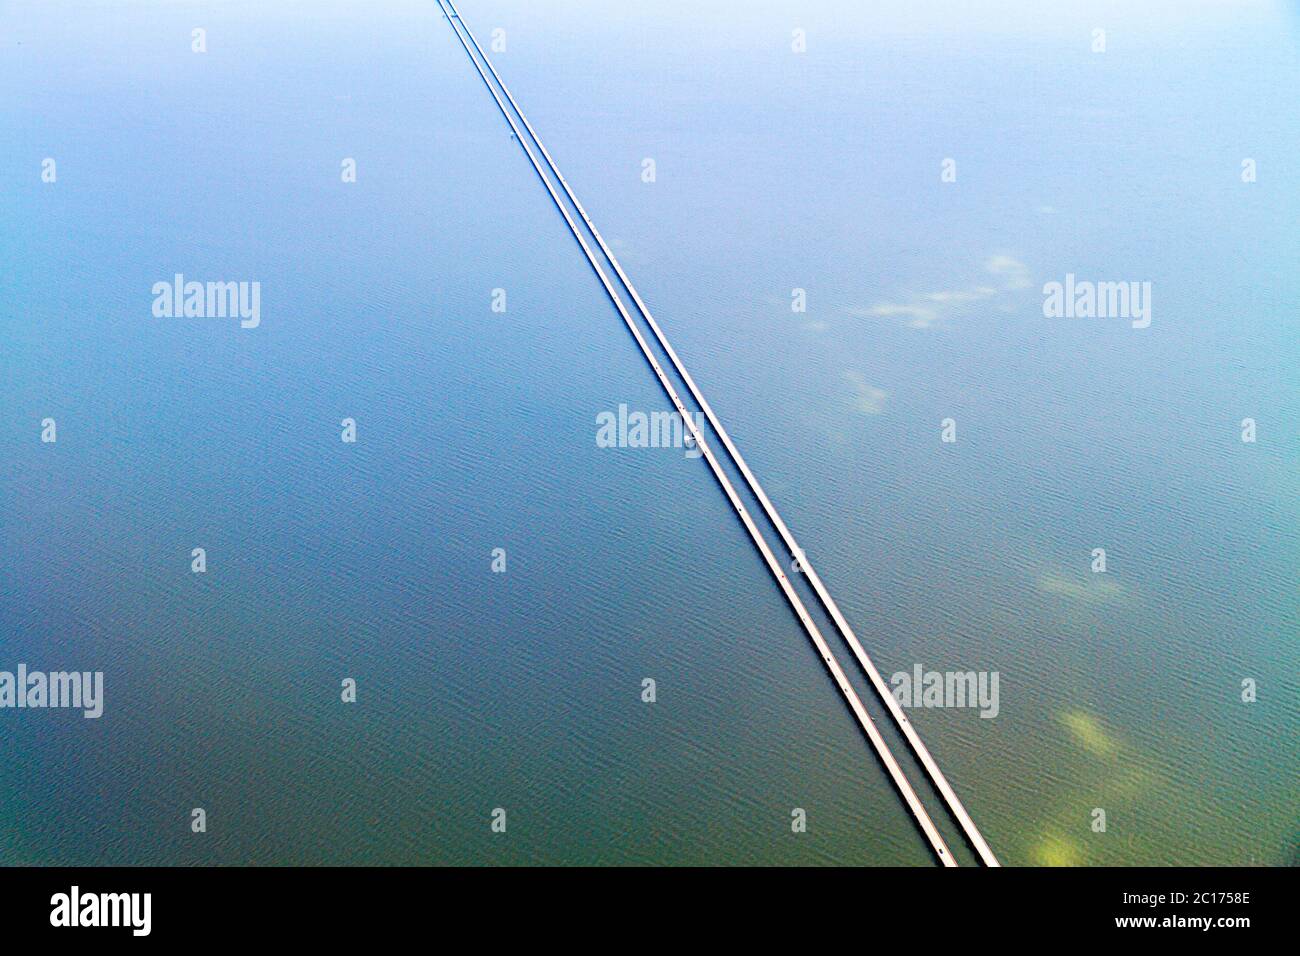 New Orleans Louisiana, Lake Pontchartrain Causeway, vista aérea desde arriba, vista, el puente más largo del mundo sobre la carretera de la autopista de agua Foto de stock